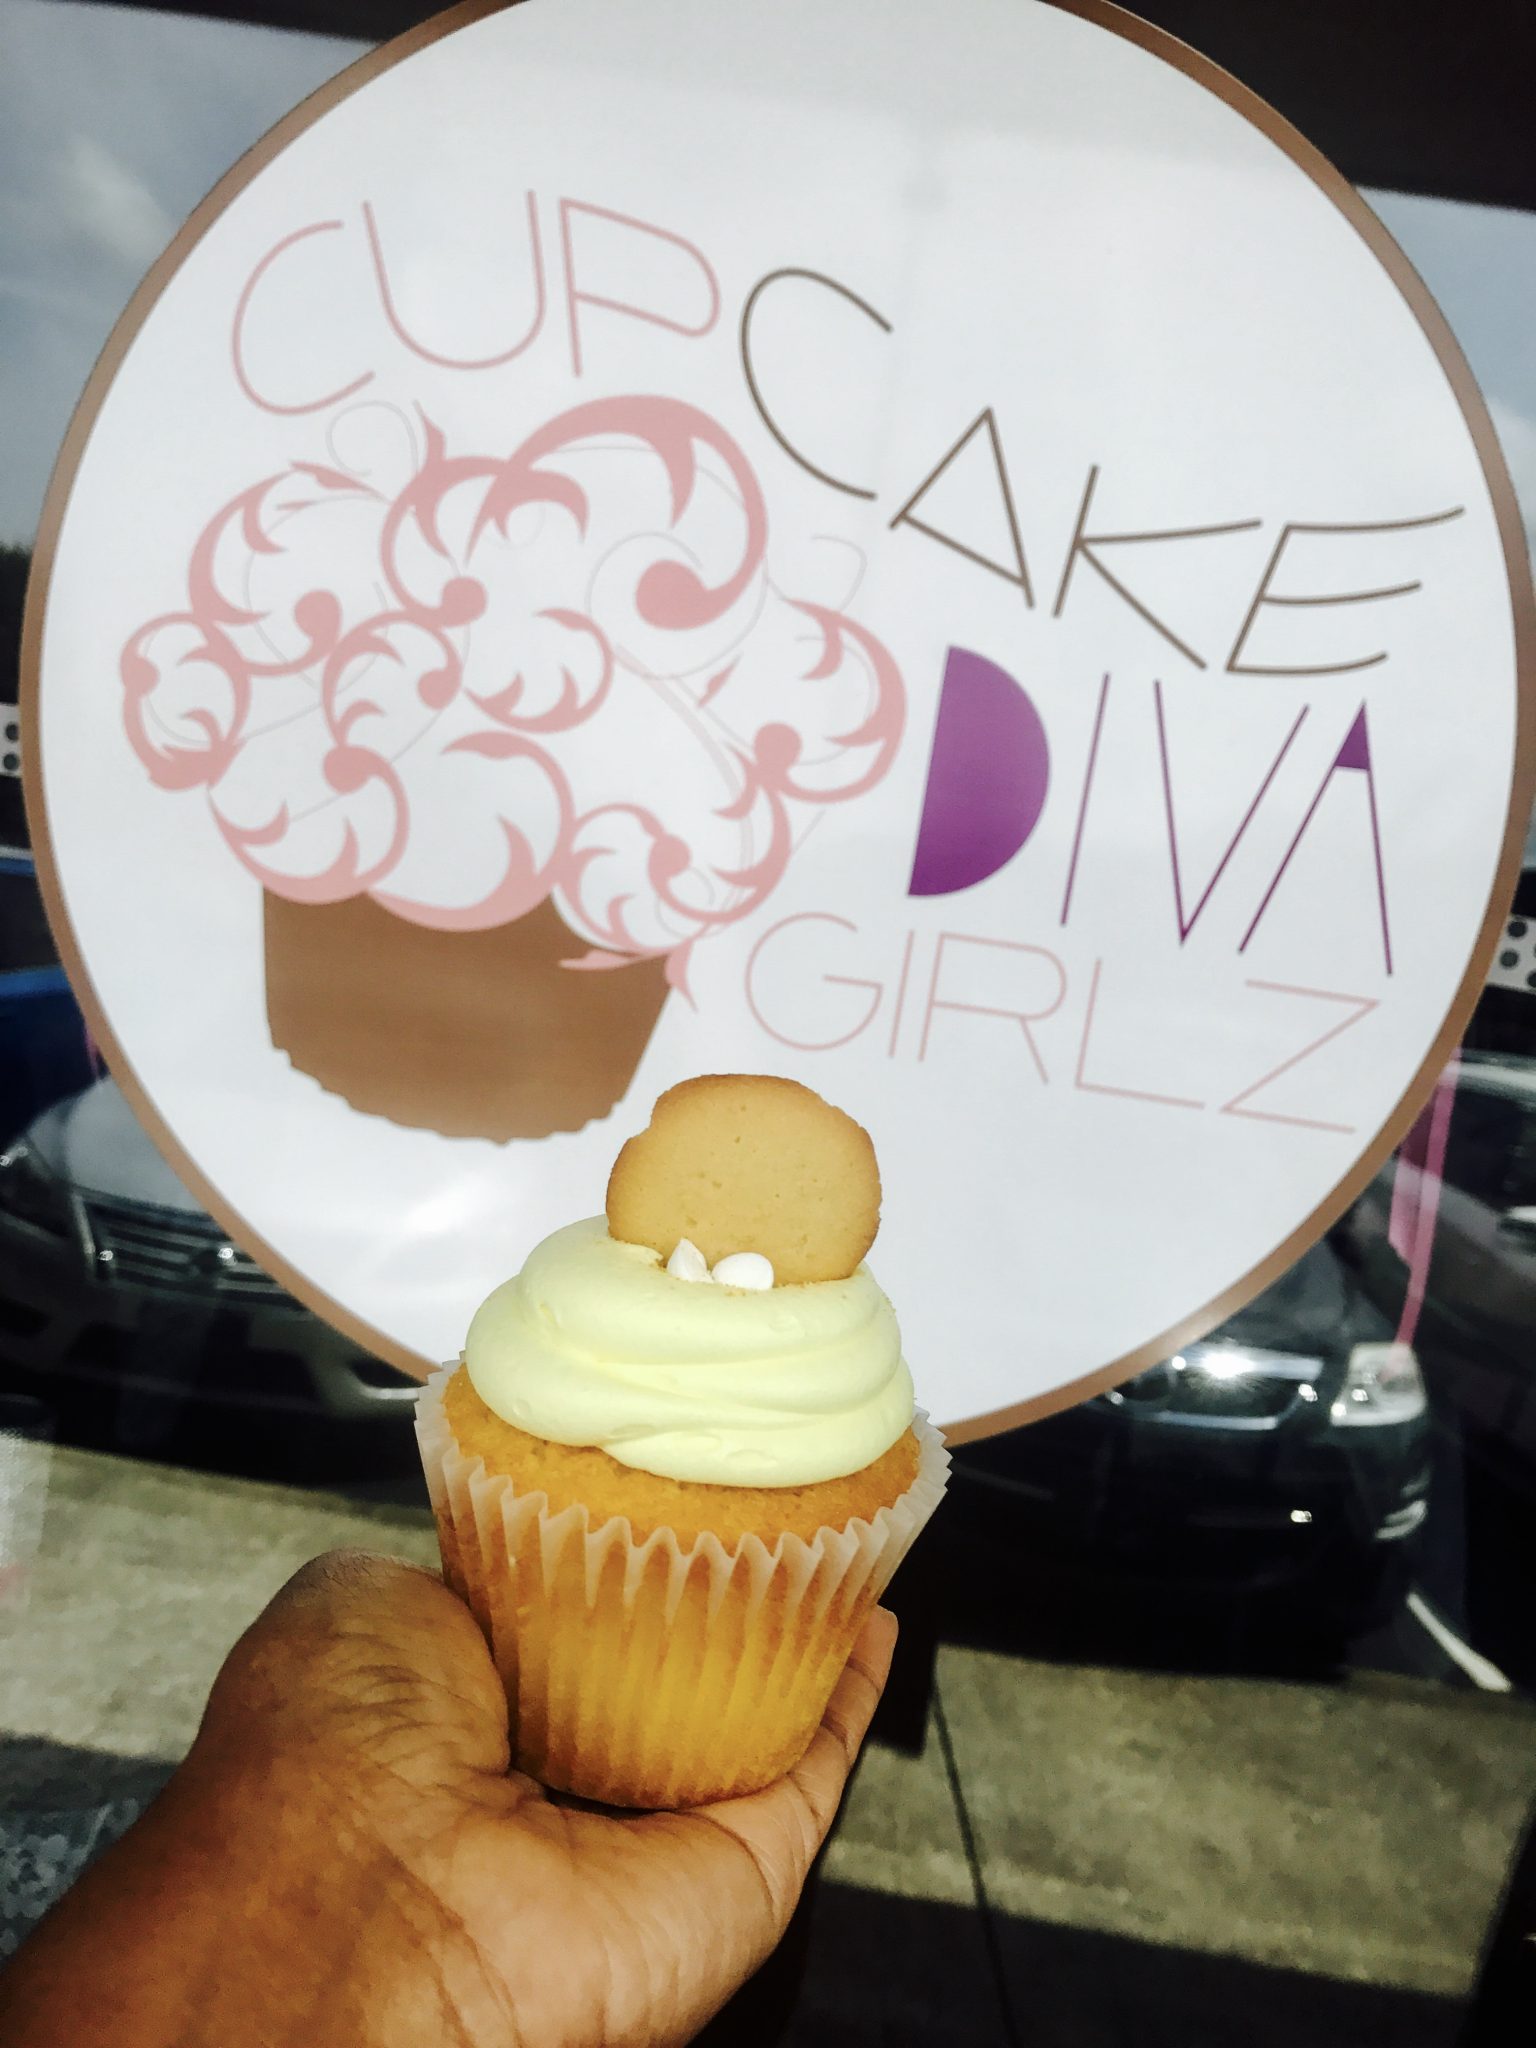 Cupcake Diva Girlz In Dacula, Ga